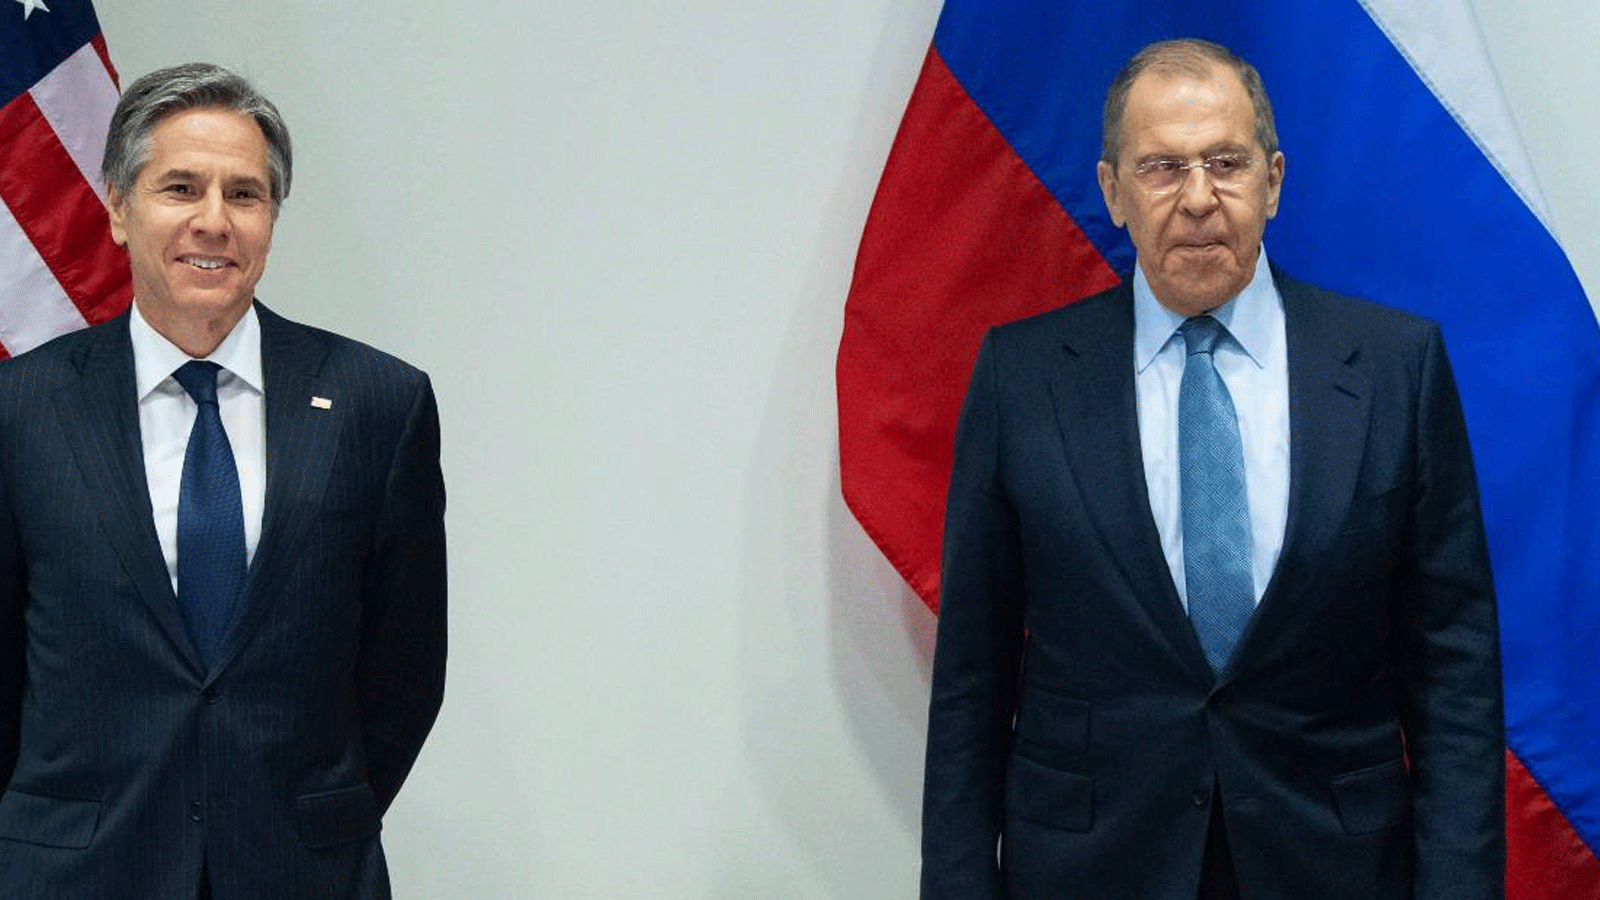 وزير الخارجية الأمريكي أنتوني بلينكين، إلى اليسار، مع وزير الخارجية الروسي سيرجي لافروف قبل اجتماع في أيسلندا.